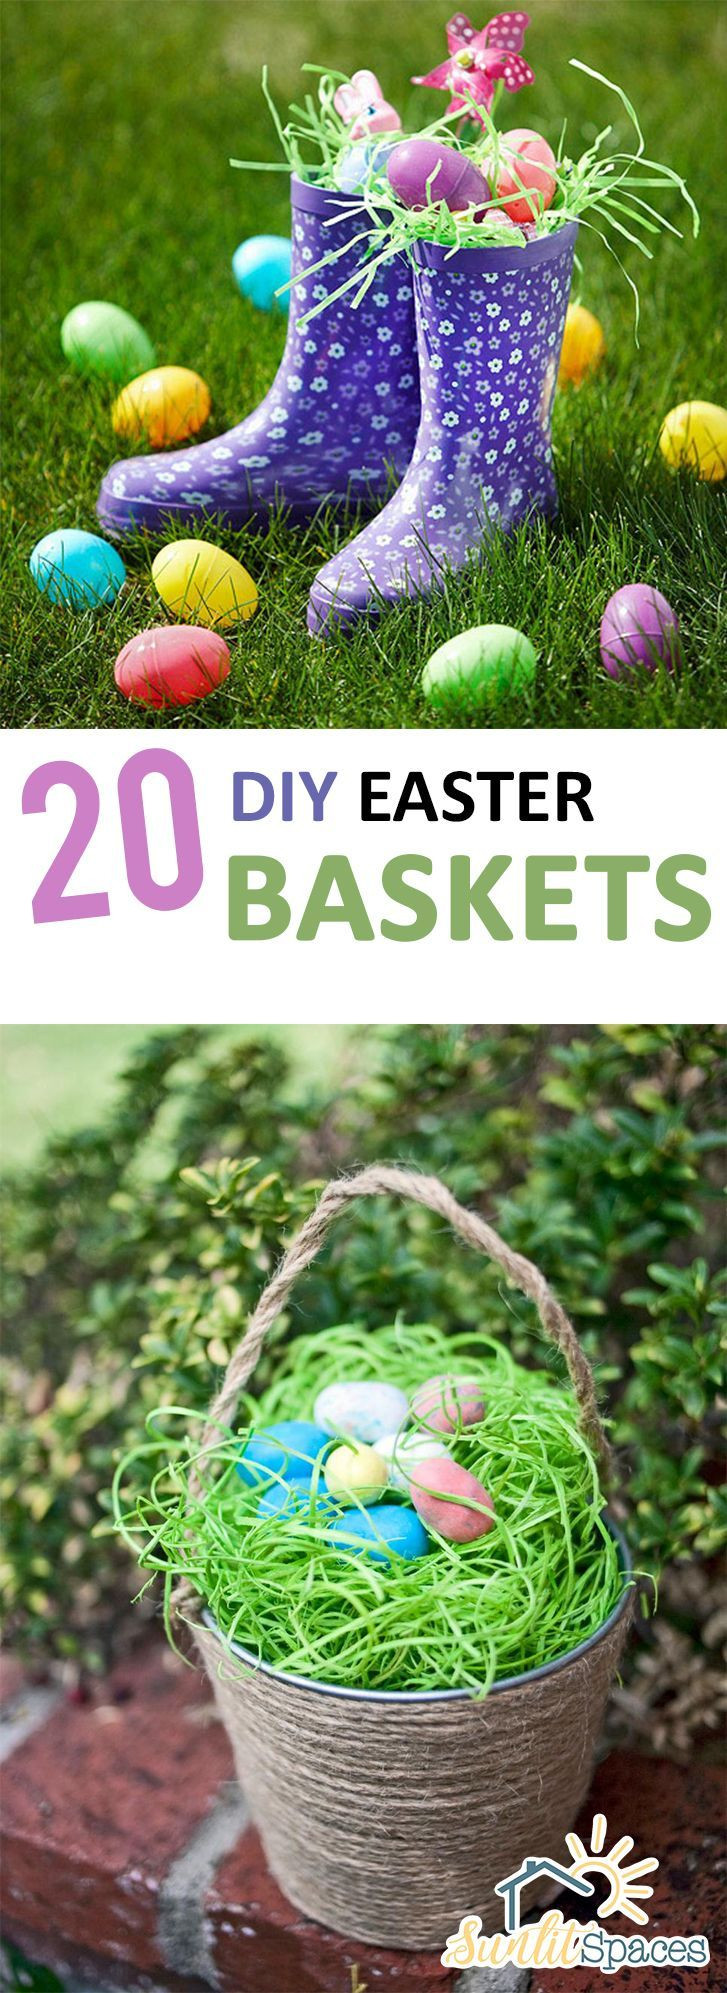 DIY Easter Basket Ideas For Toddlers
 20 DIY Easter Baskets